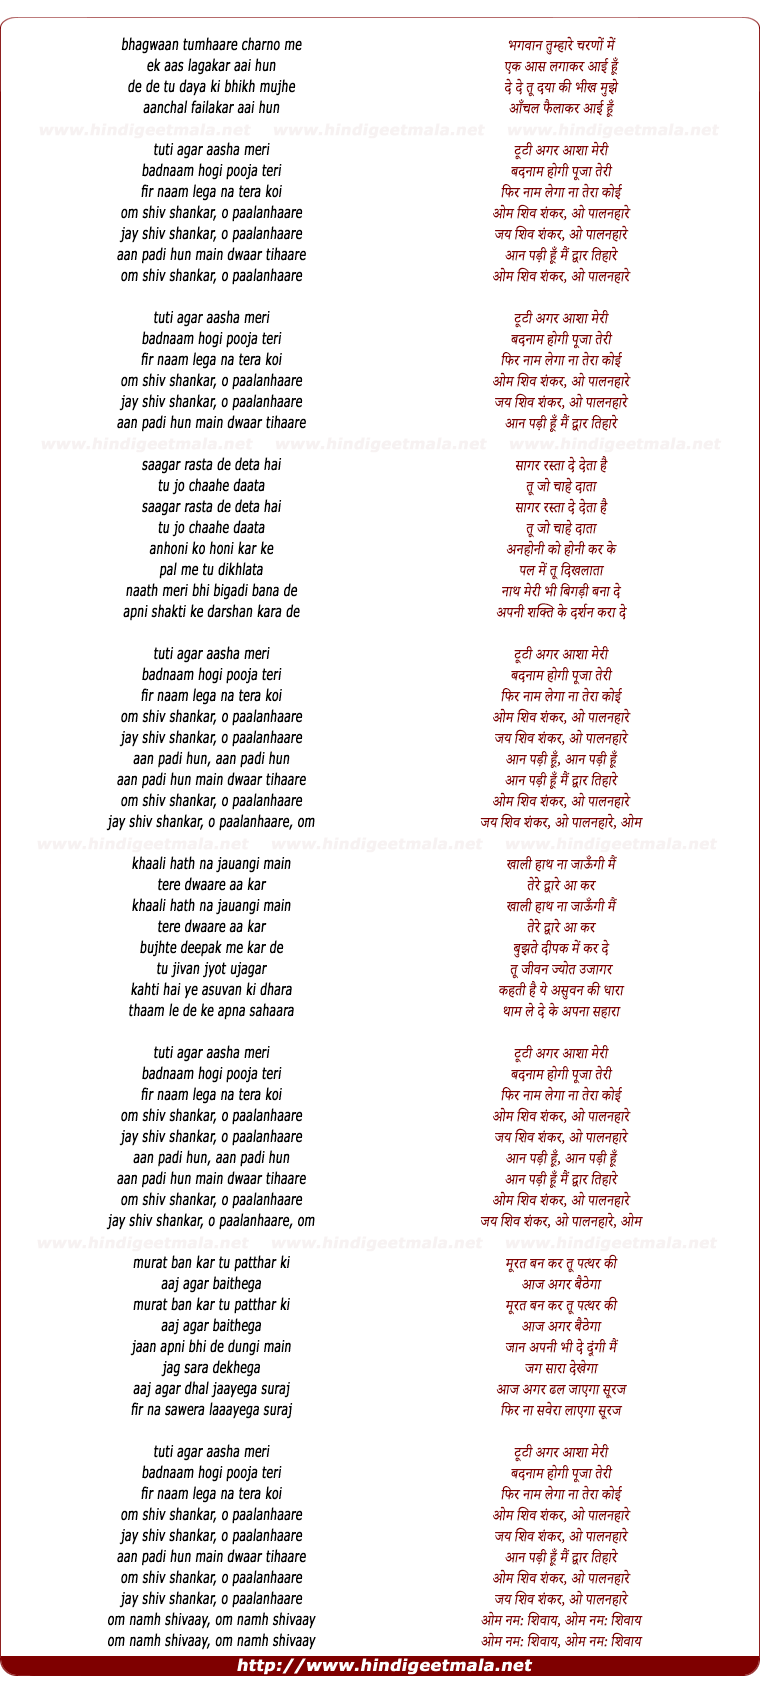 lyrics of song Jai Shiv Shankar O Paalanhaare